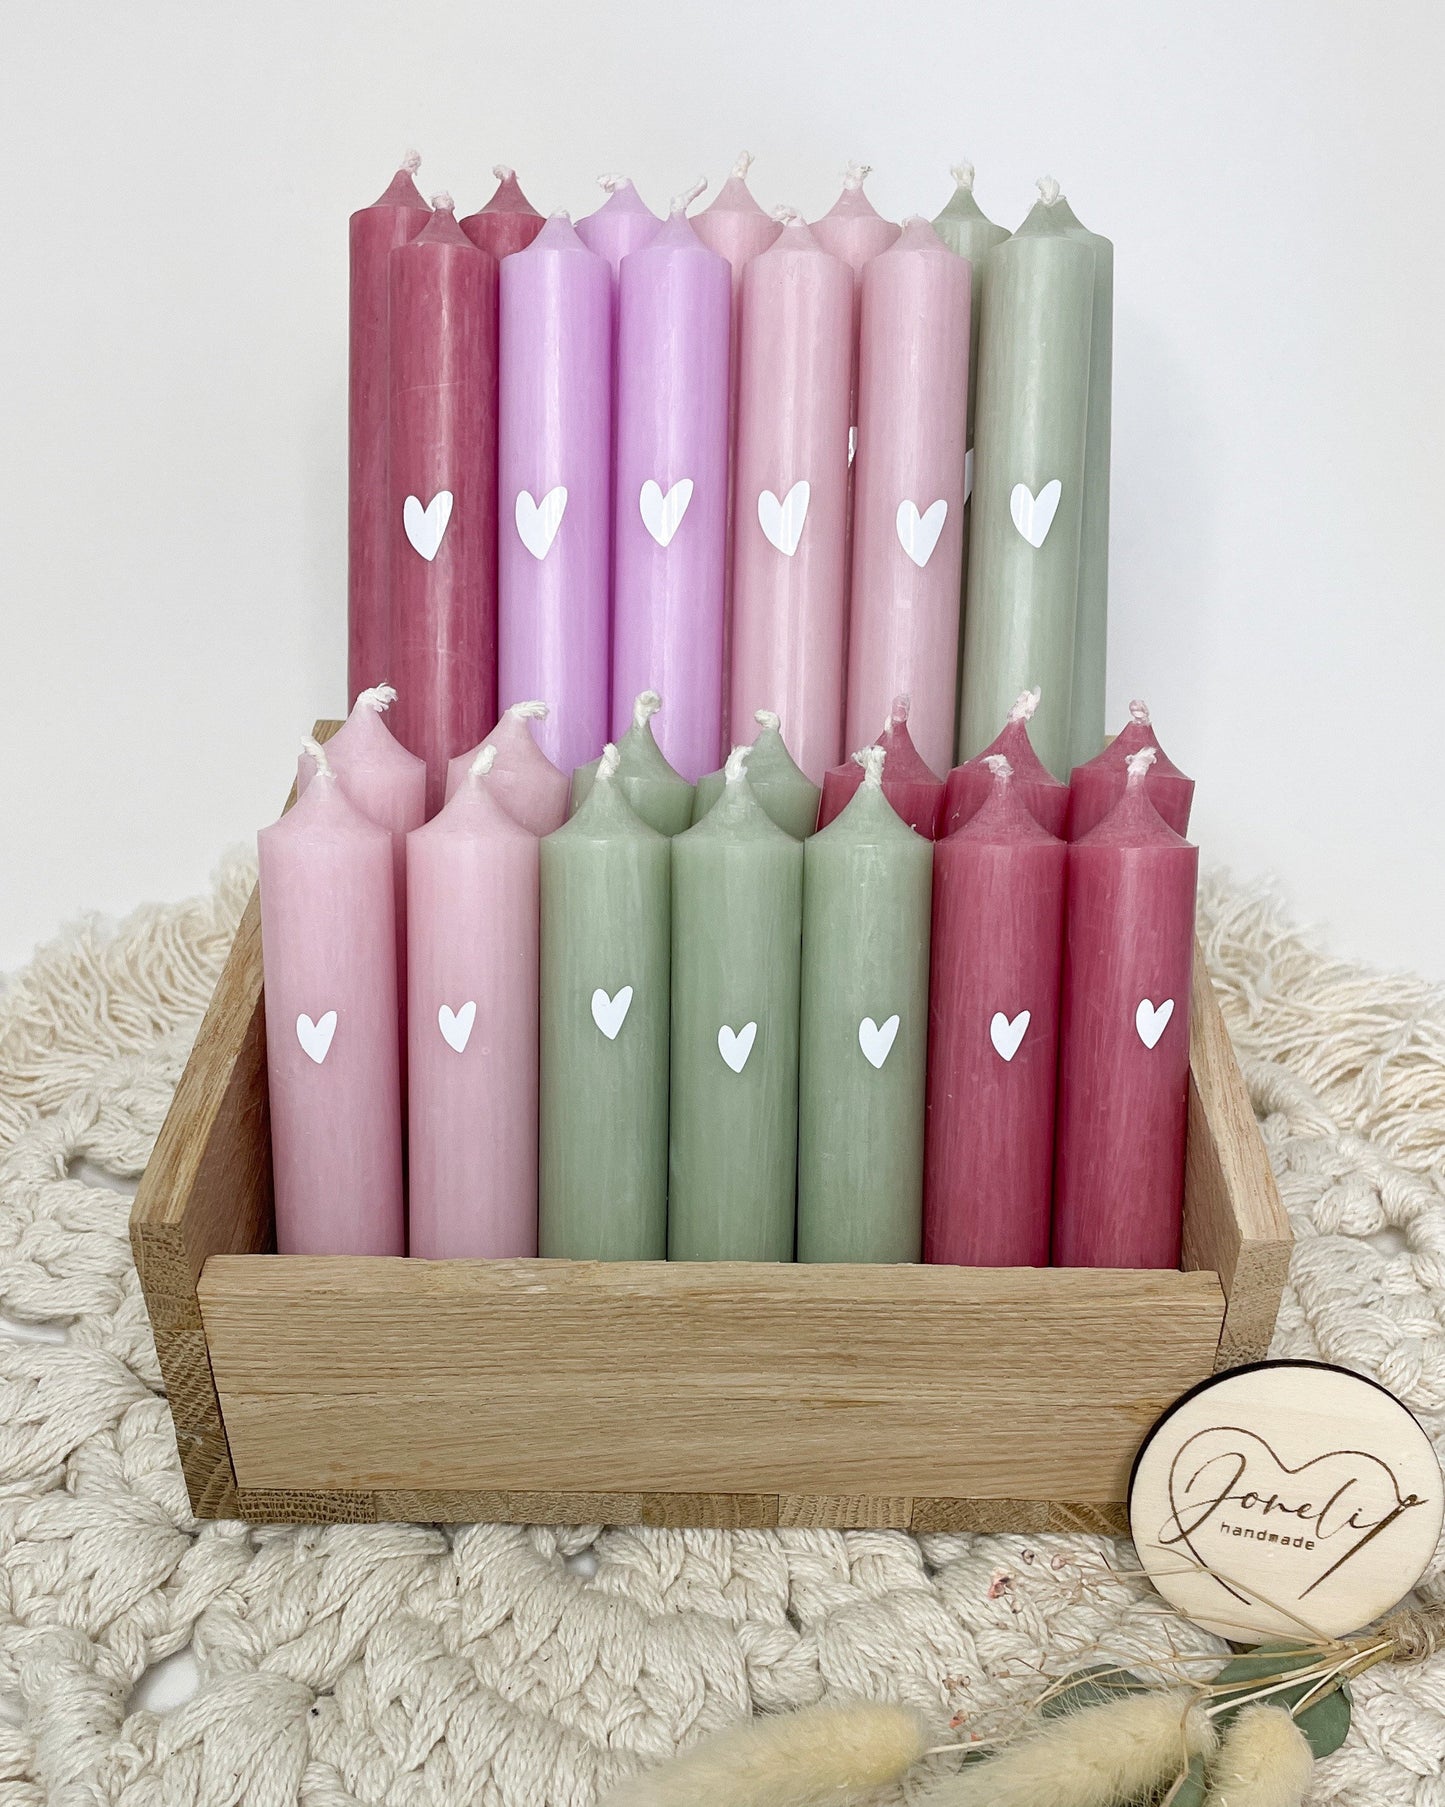 Geschenkset / Raysin Häuschen/ Kerze mit Herz und kleiner Grußbotschaft verschiedene Farben